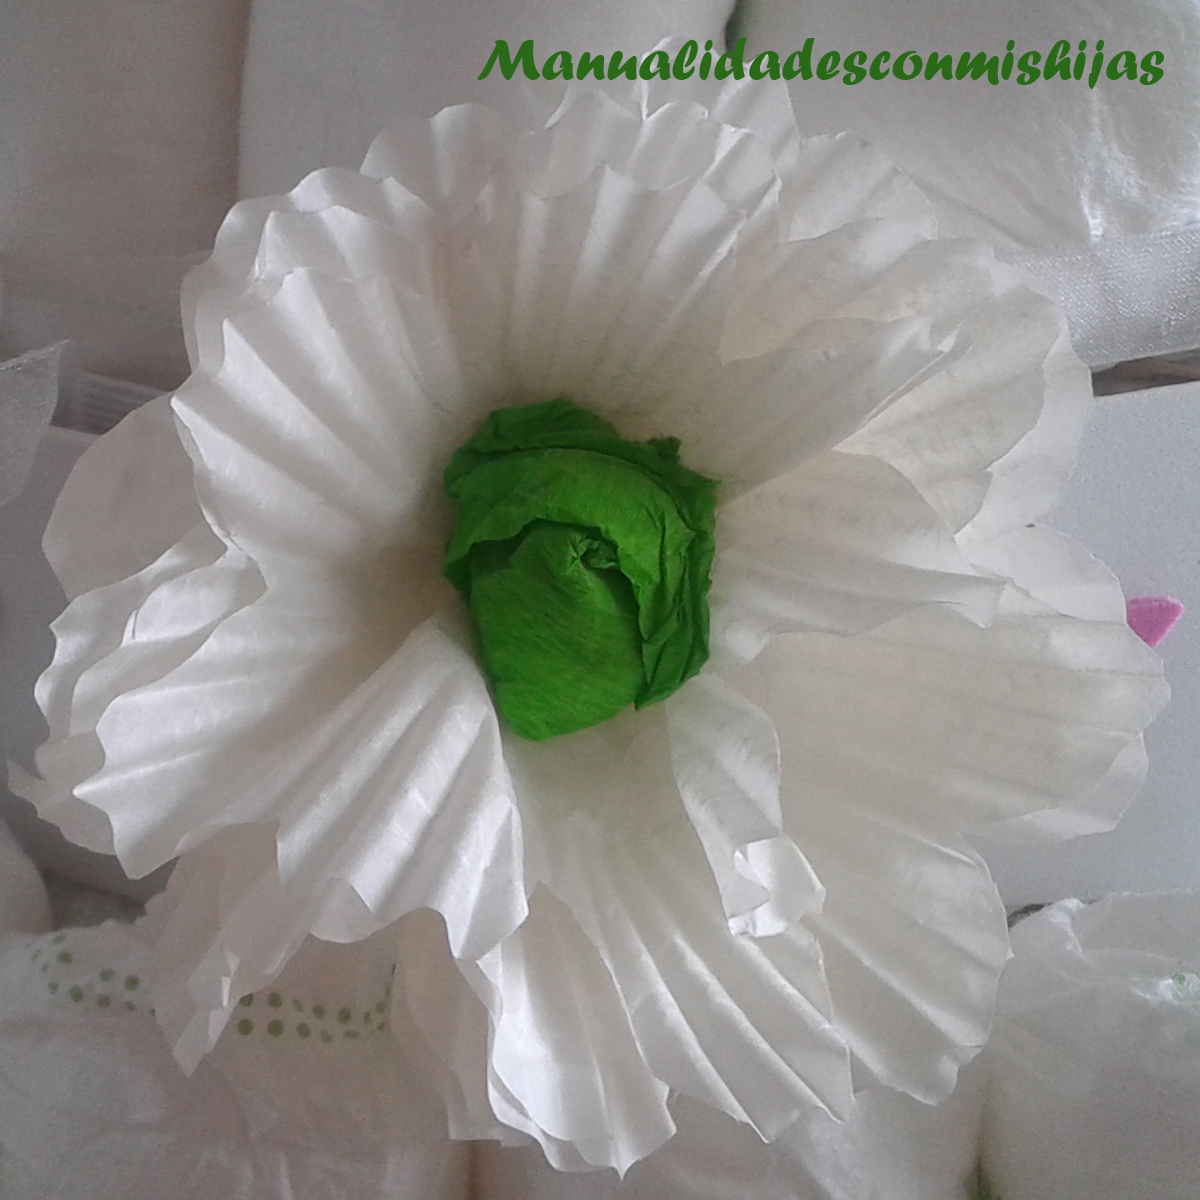 Flores con moldes de magdalenas Una manera original de decorar regalos i.mtr.cool/kmkojlhbem